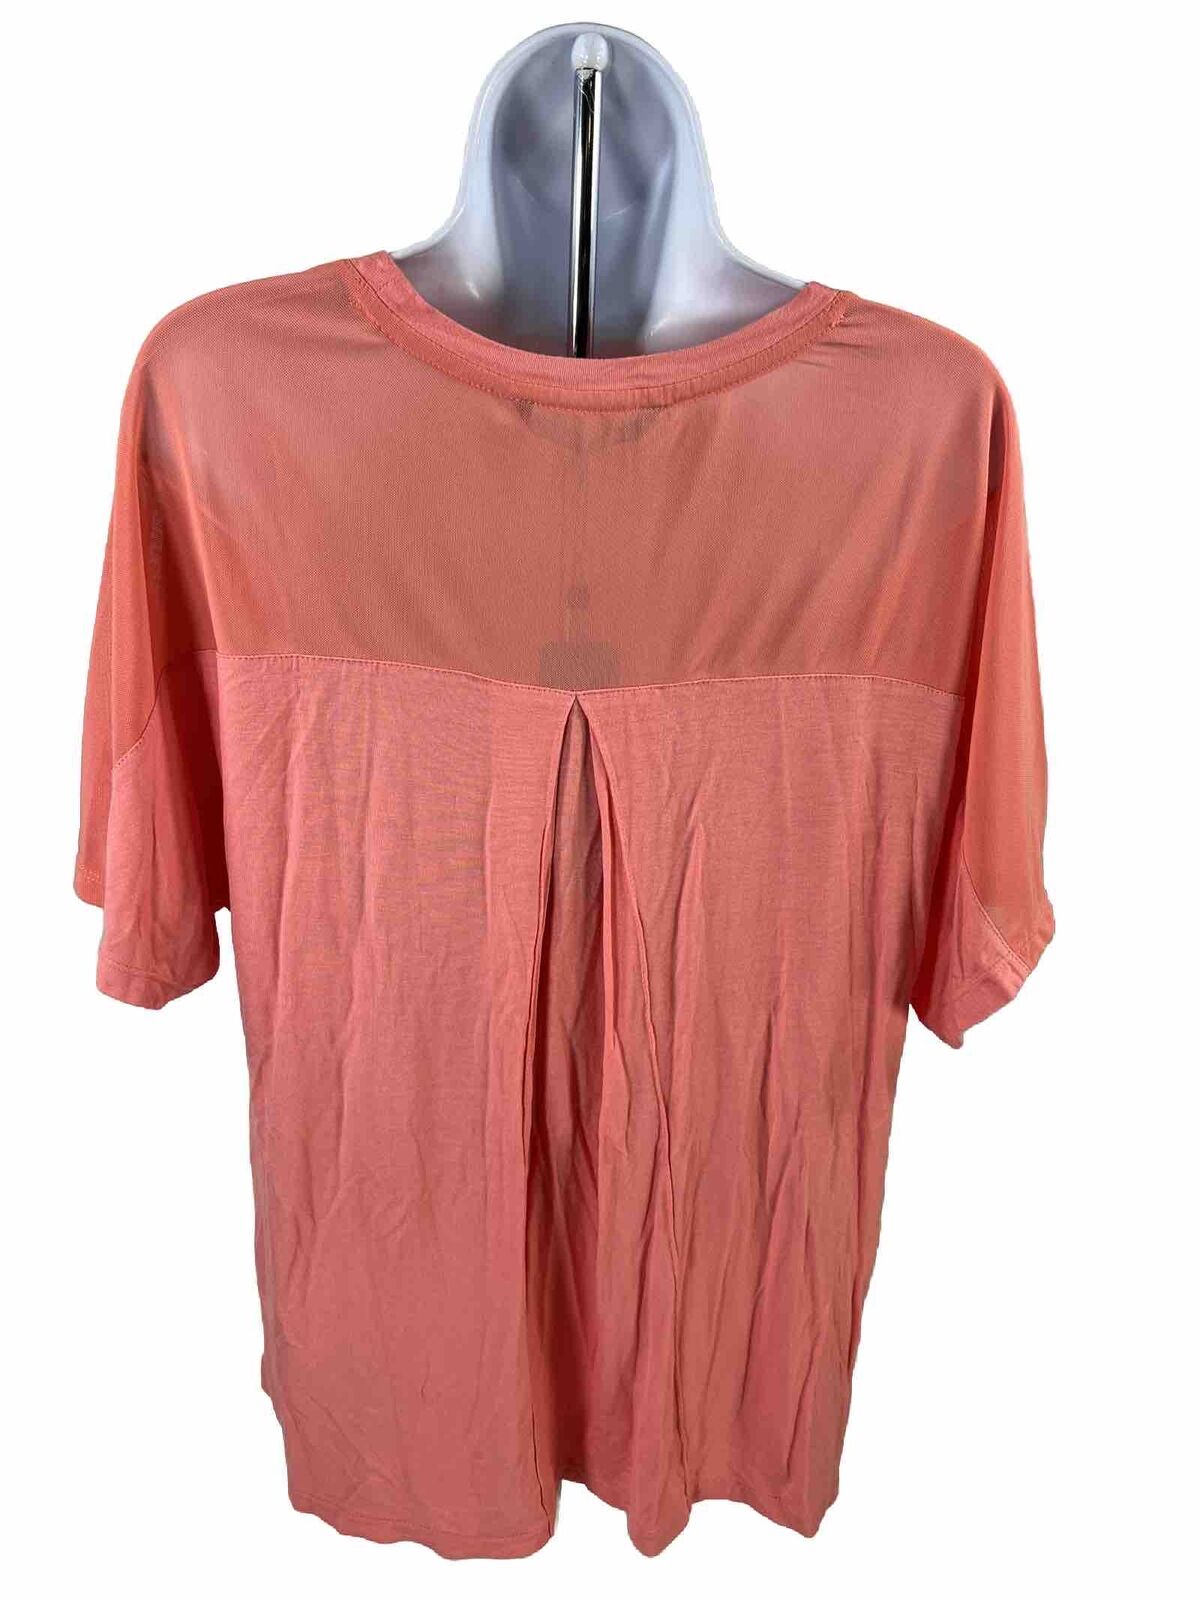 NEW Levelwear Verve Women's Pink Short Sleeve Lantana Abby T-Shirt - S